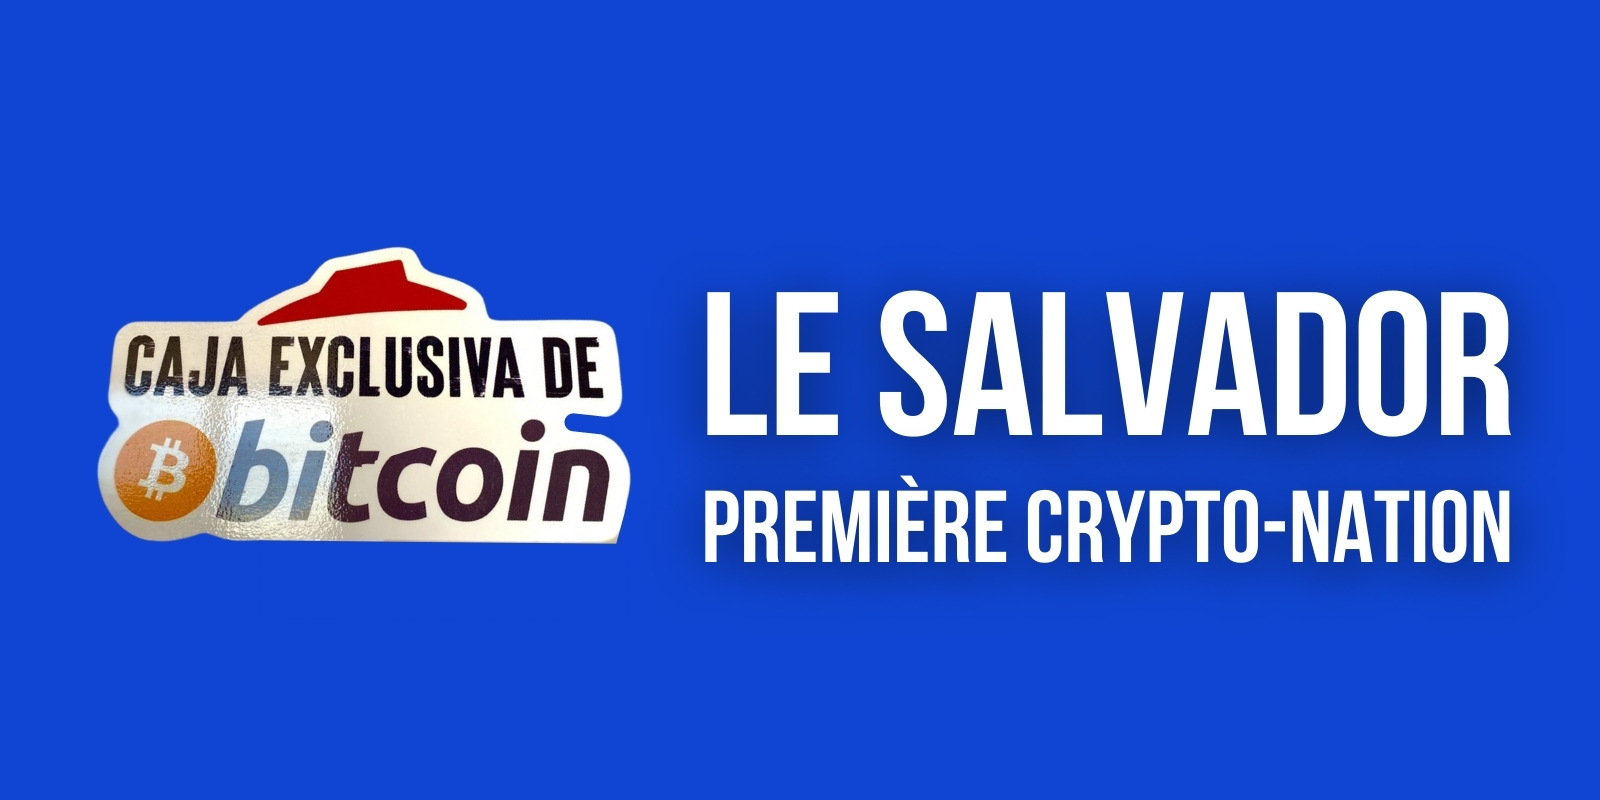 Le Salvador adopte officiellement le Bitcoin (BTC) comme monnaie légale